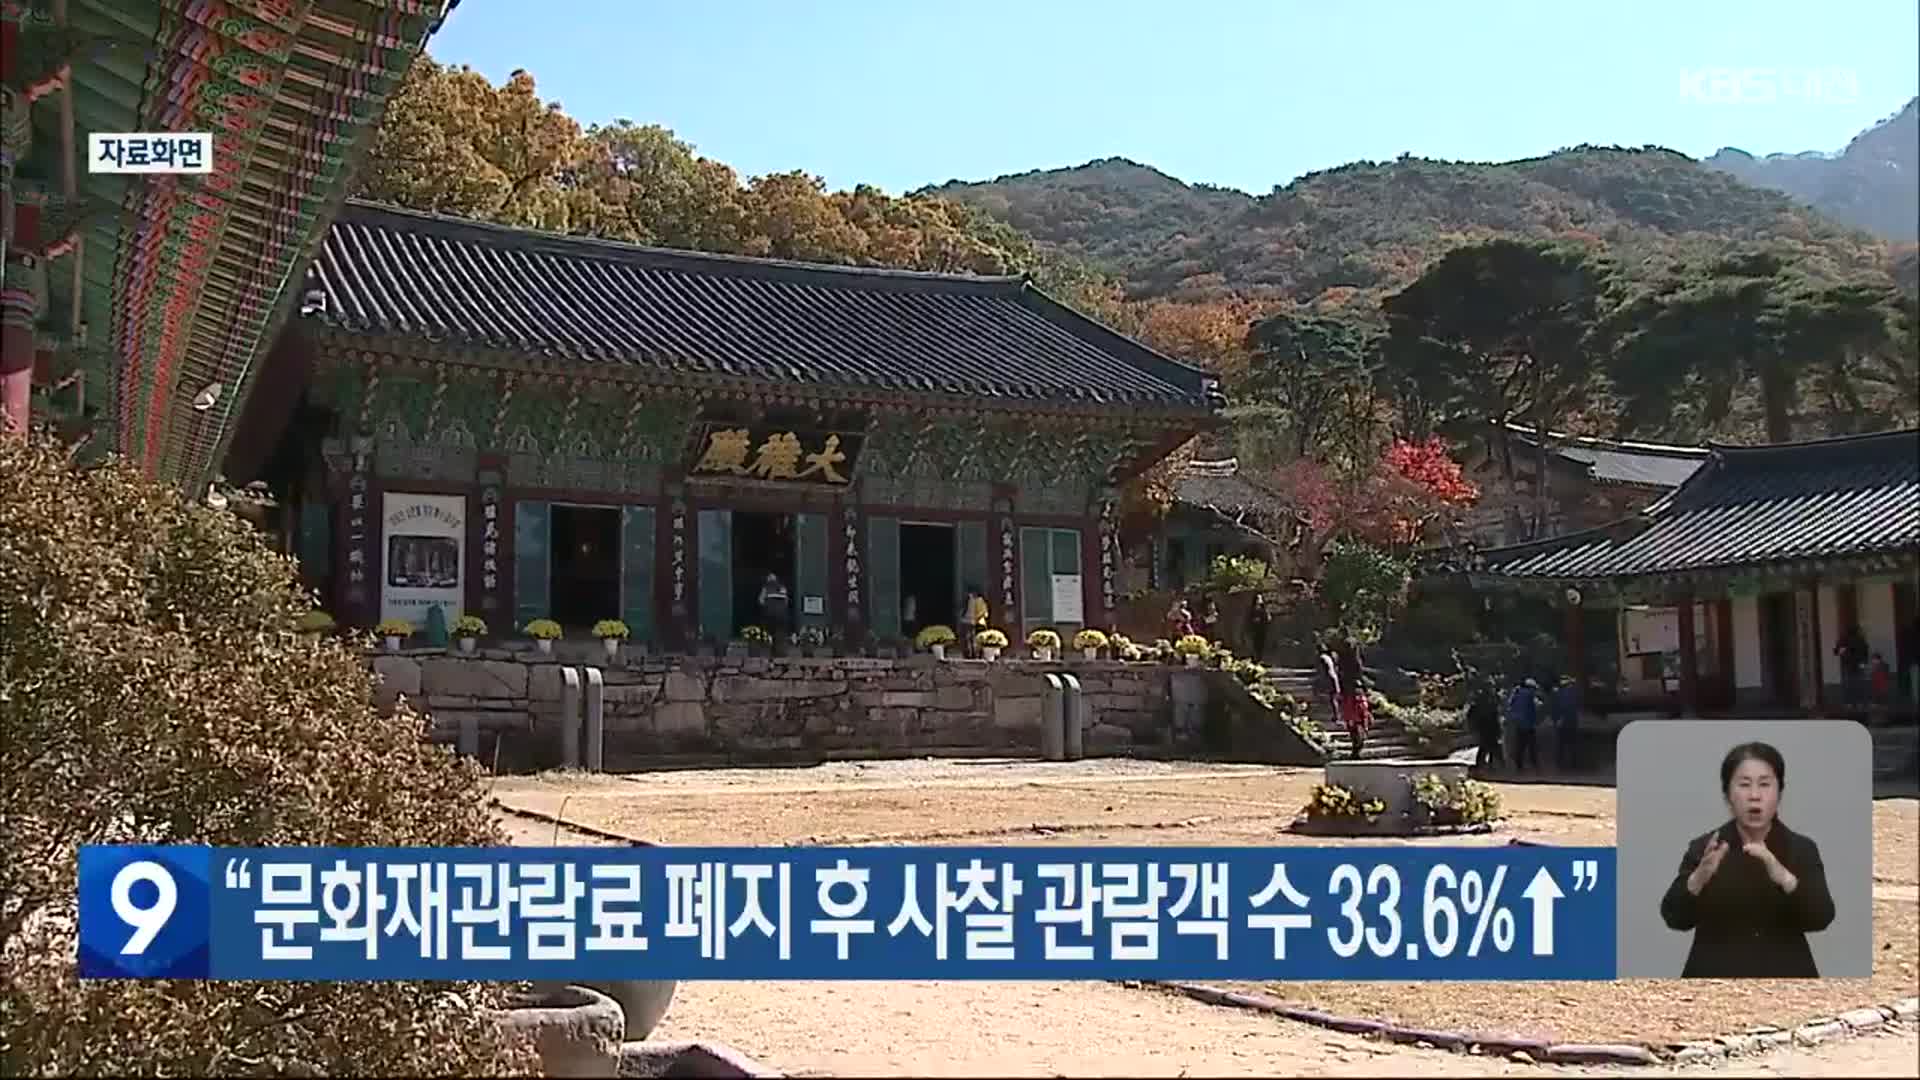 “문화재관람료 폐지 후 사찰 관람객 수 33.6%↑”